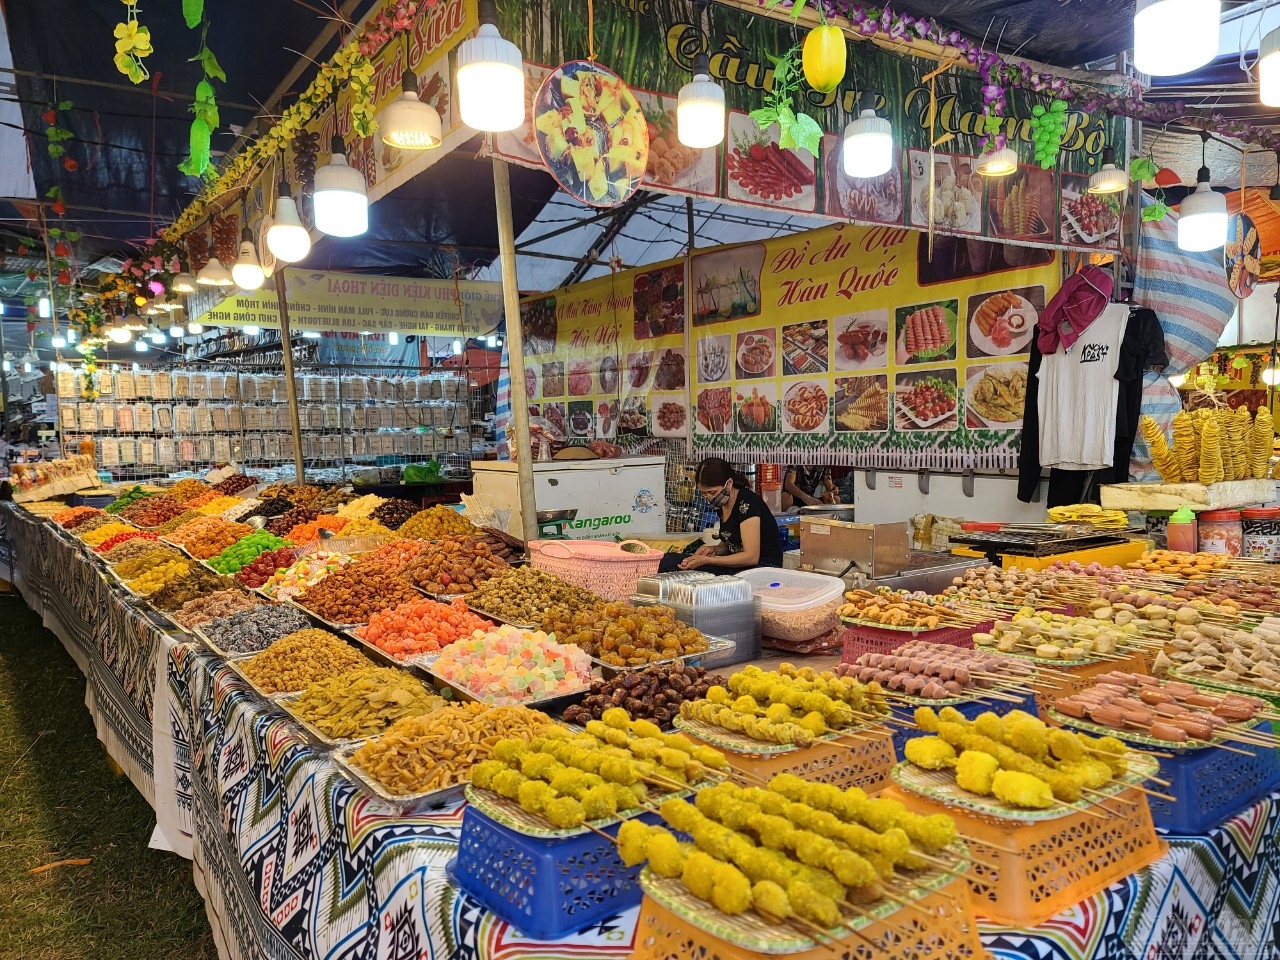 Ngoài ra, tại hội chợ thương mại huyện Cao Phong còn có các gian hàng giới thiệu các sản phẩm ẩm thực, sản phẩm công nghiệp của các doanh nghiệp, nhà sản xuất trên địa bàn tỉnh Hòa Bình